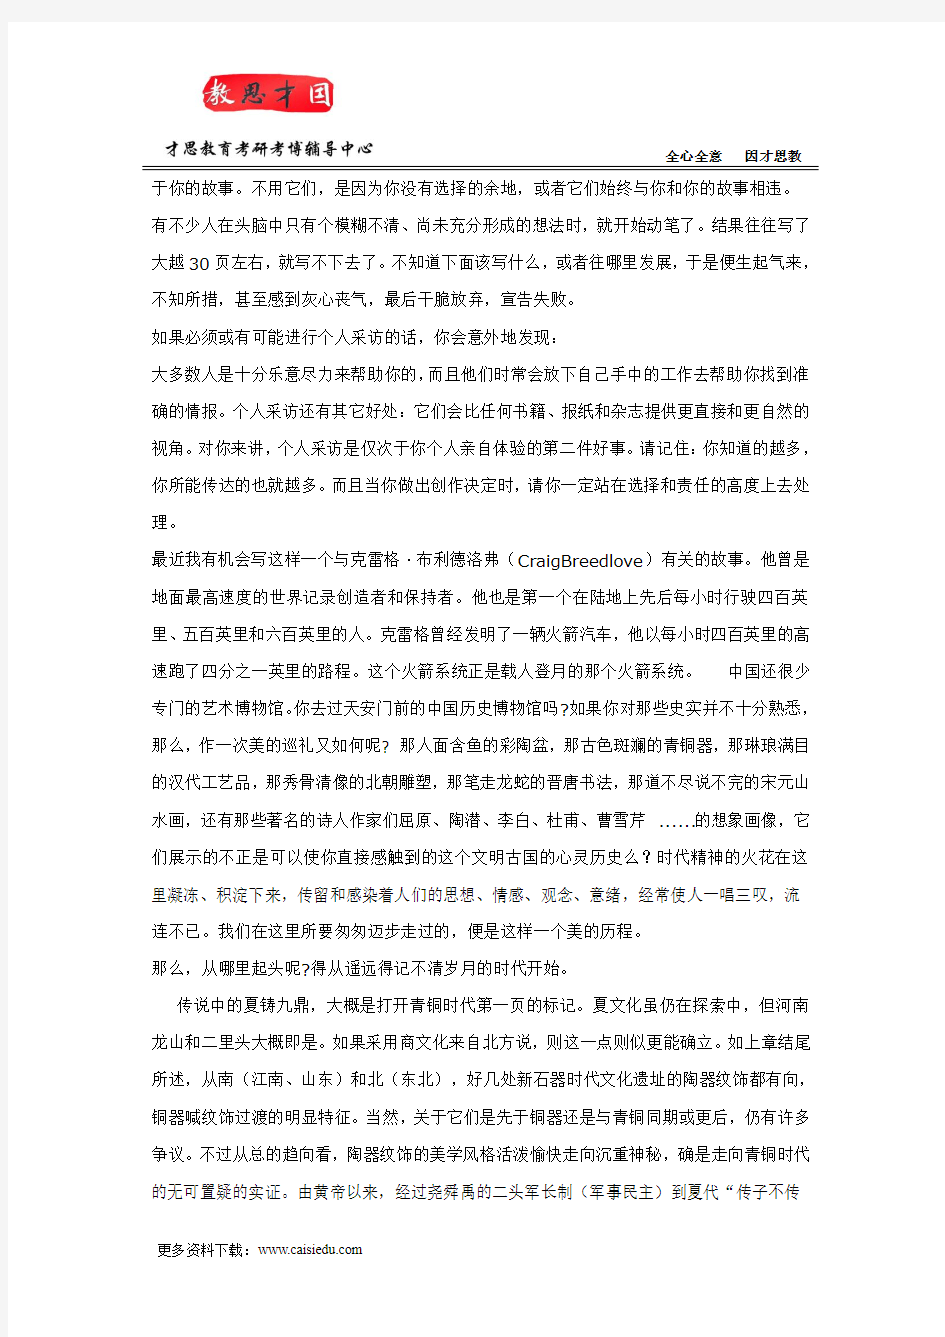 北京电影学院文学系电影剧本创作考研辅导班资料笔记精选